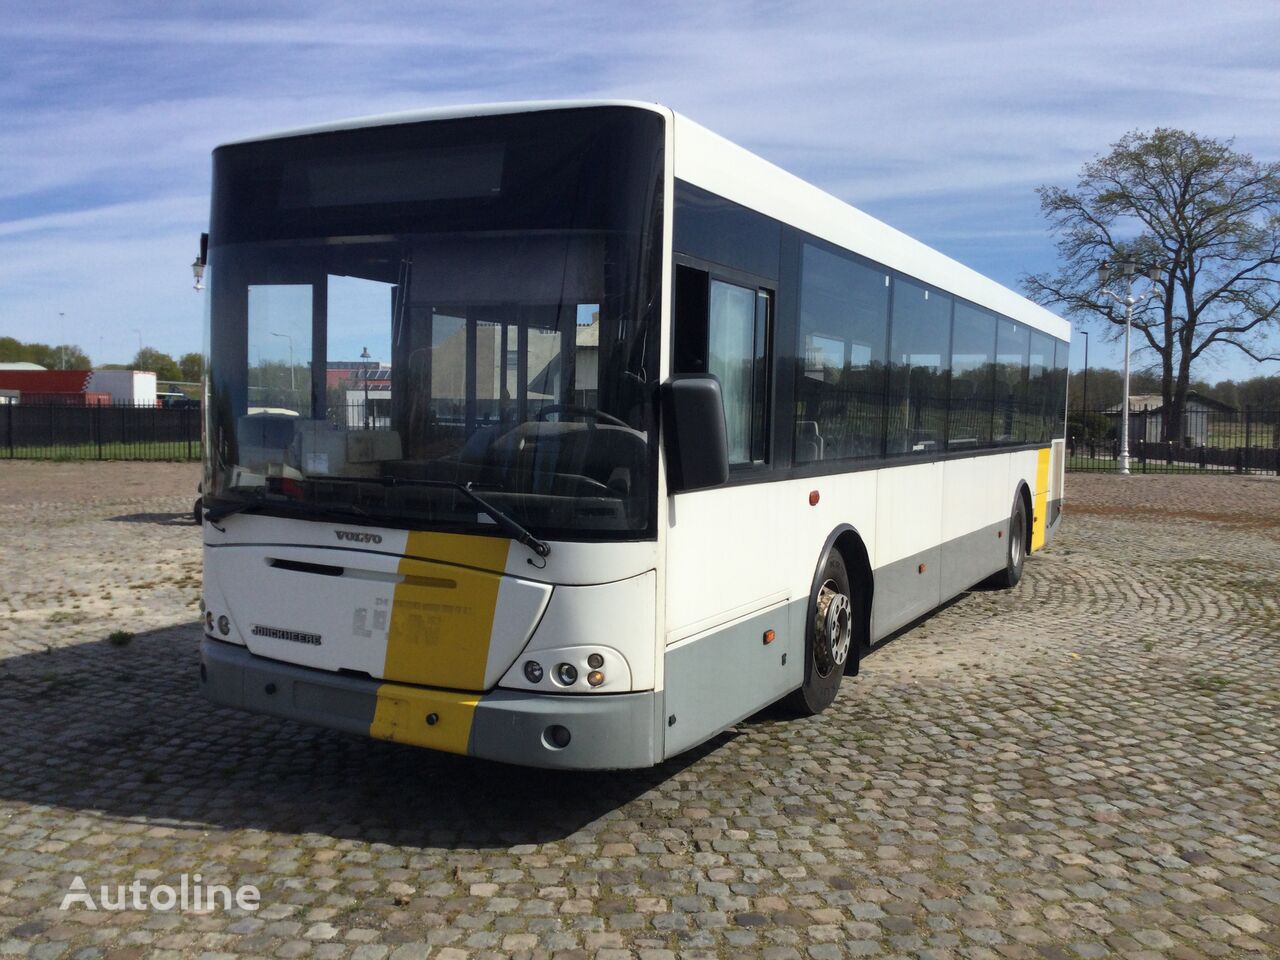 сочлененный автобус Volvo B7rle